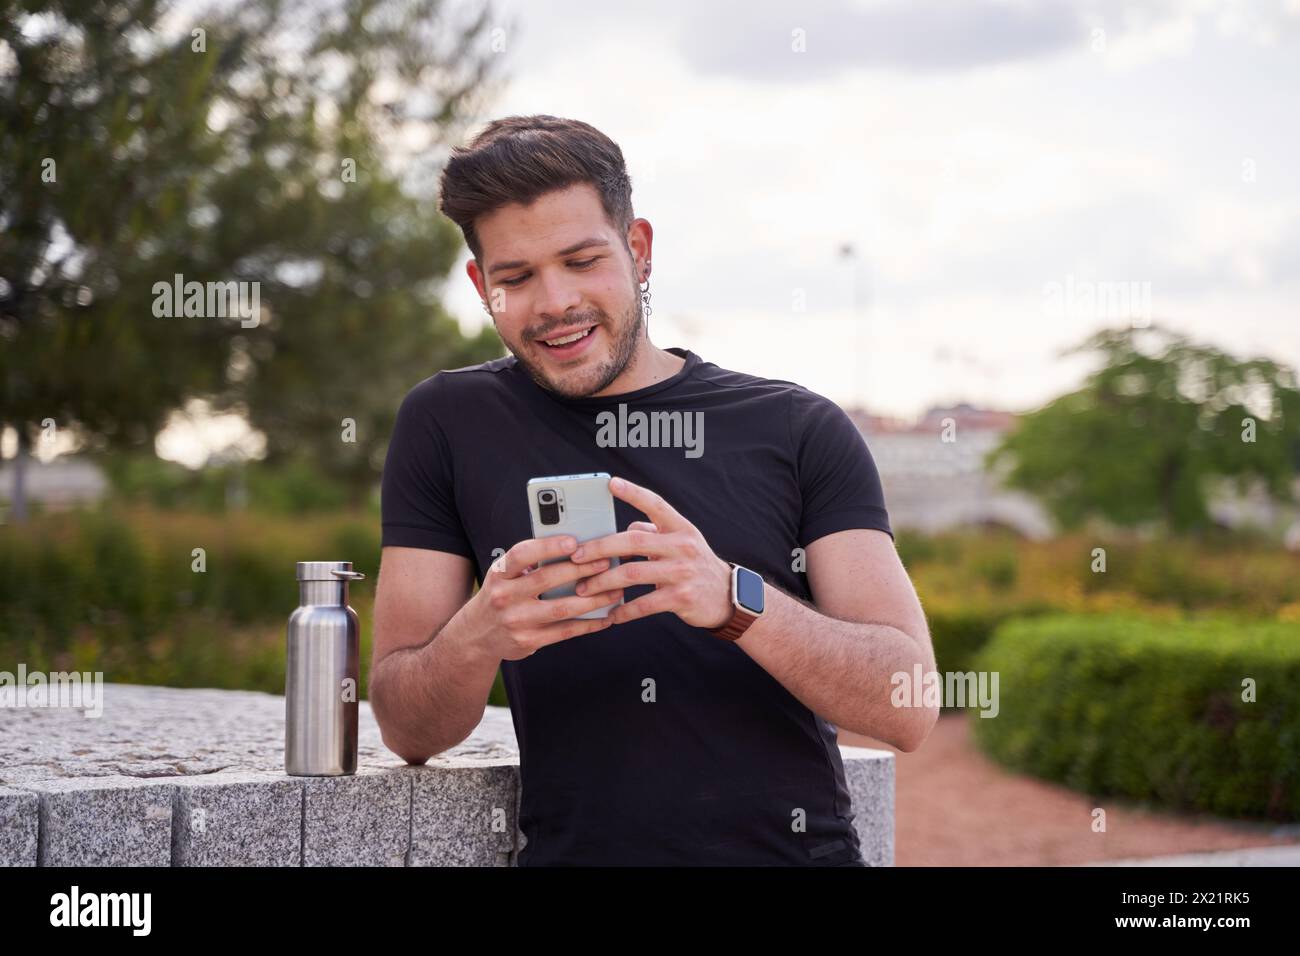 Porträt eines jungen, lächelnden Mannes, der mit seinen Freunden plaudert oder seine sozialen Netzwerke mit seinem Smartphone ansieht Stockfoto